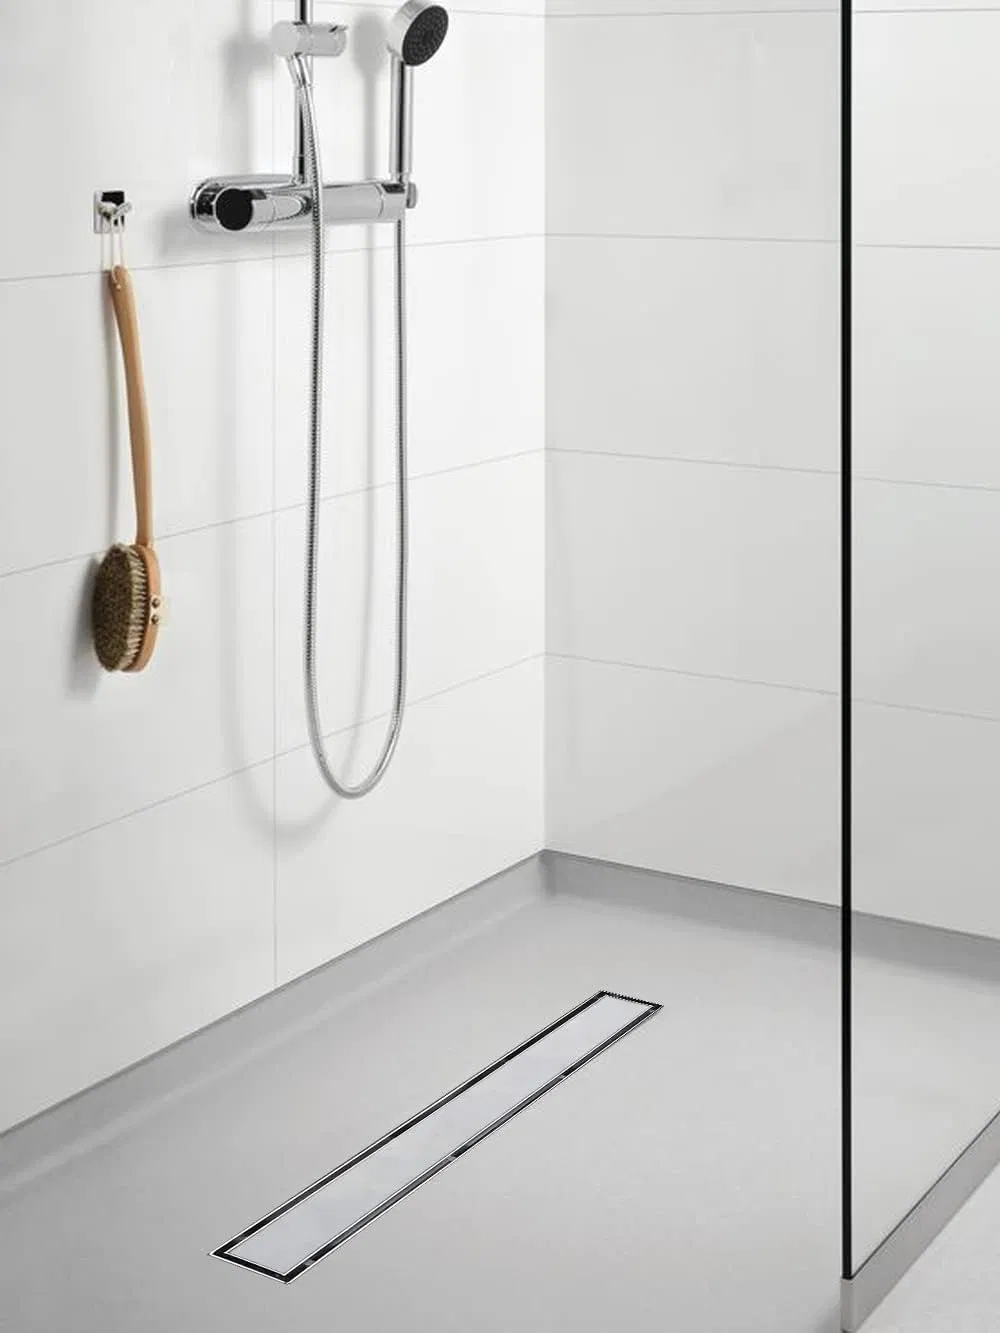 Linear Shower Floor Drain, 32 Inch Brushed Nickel 304 Stainless Steel Bathroom Drains